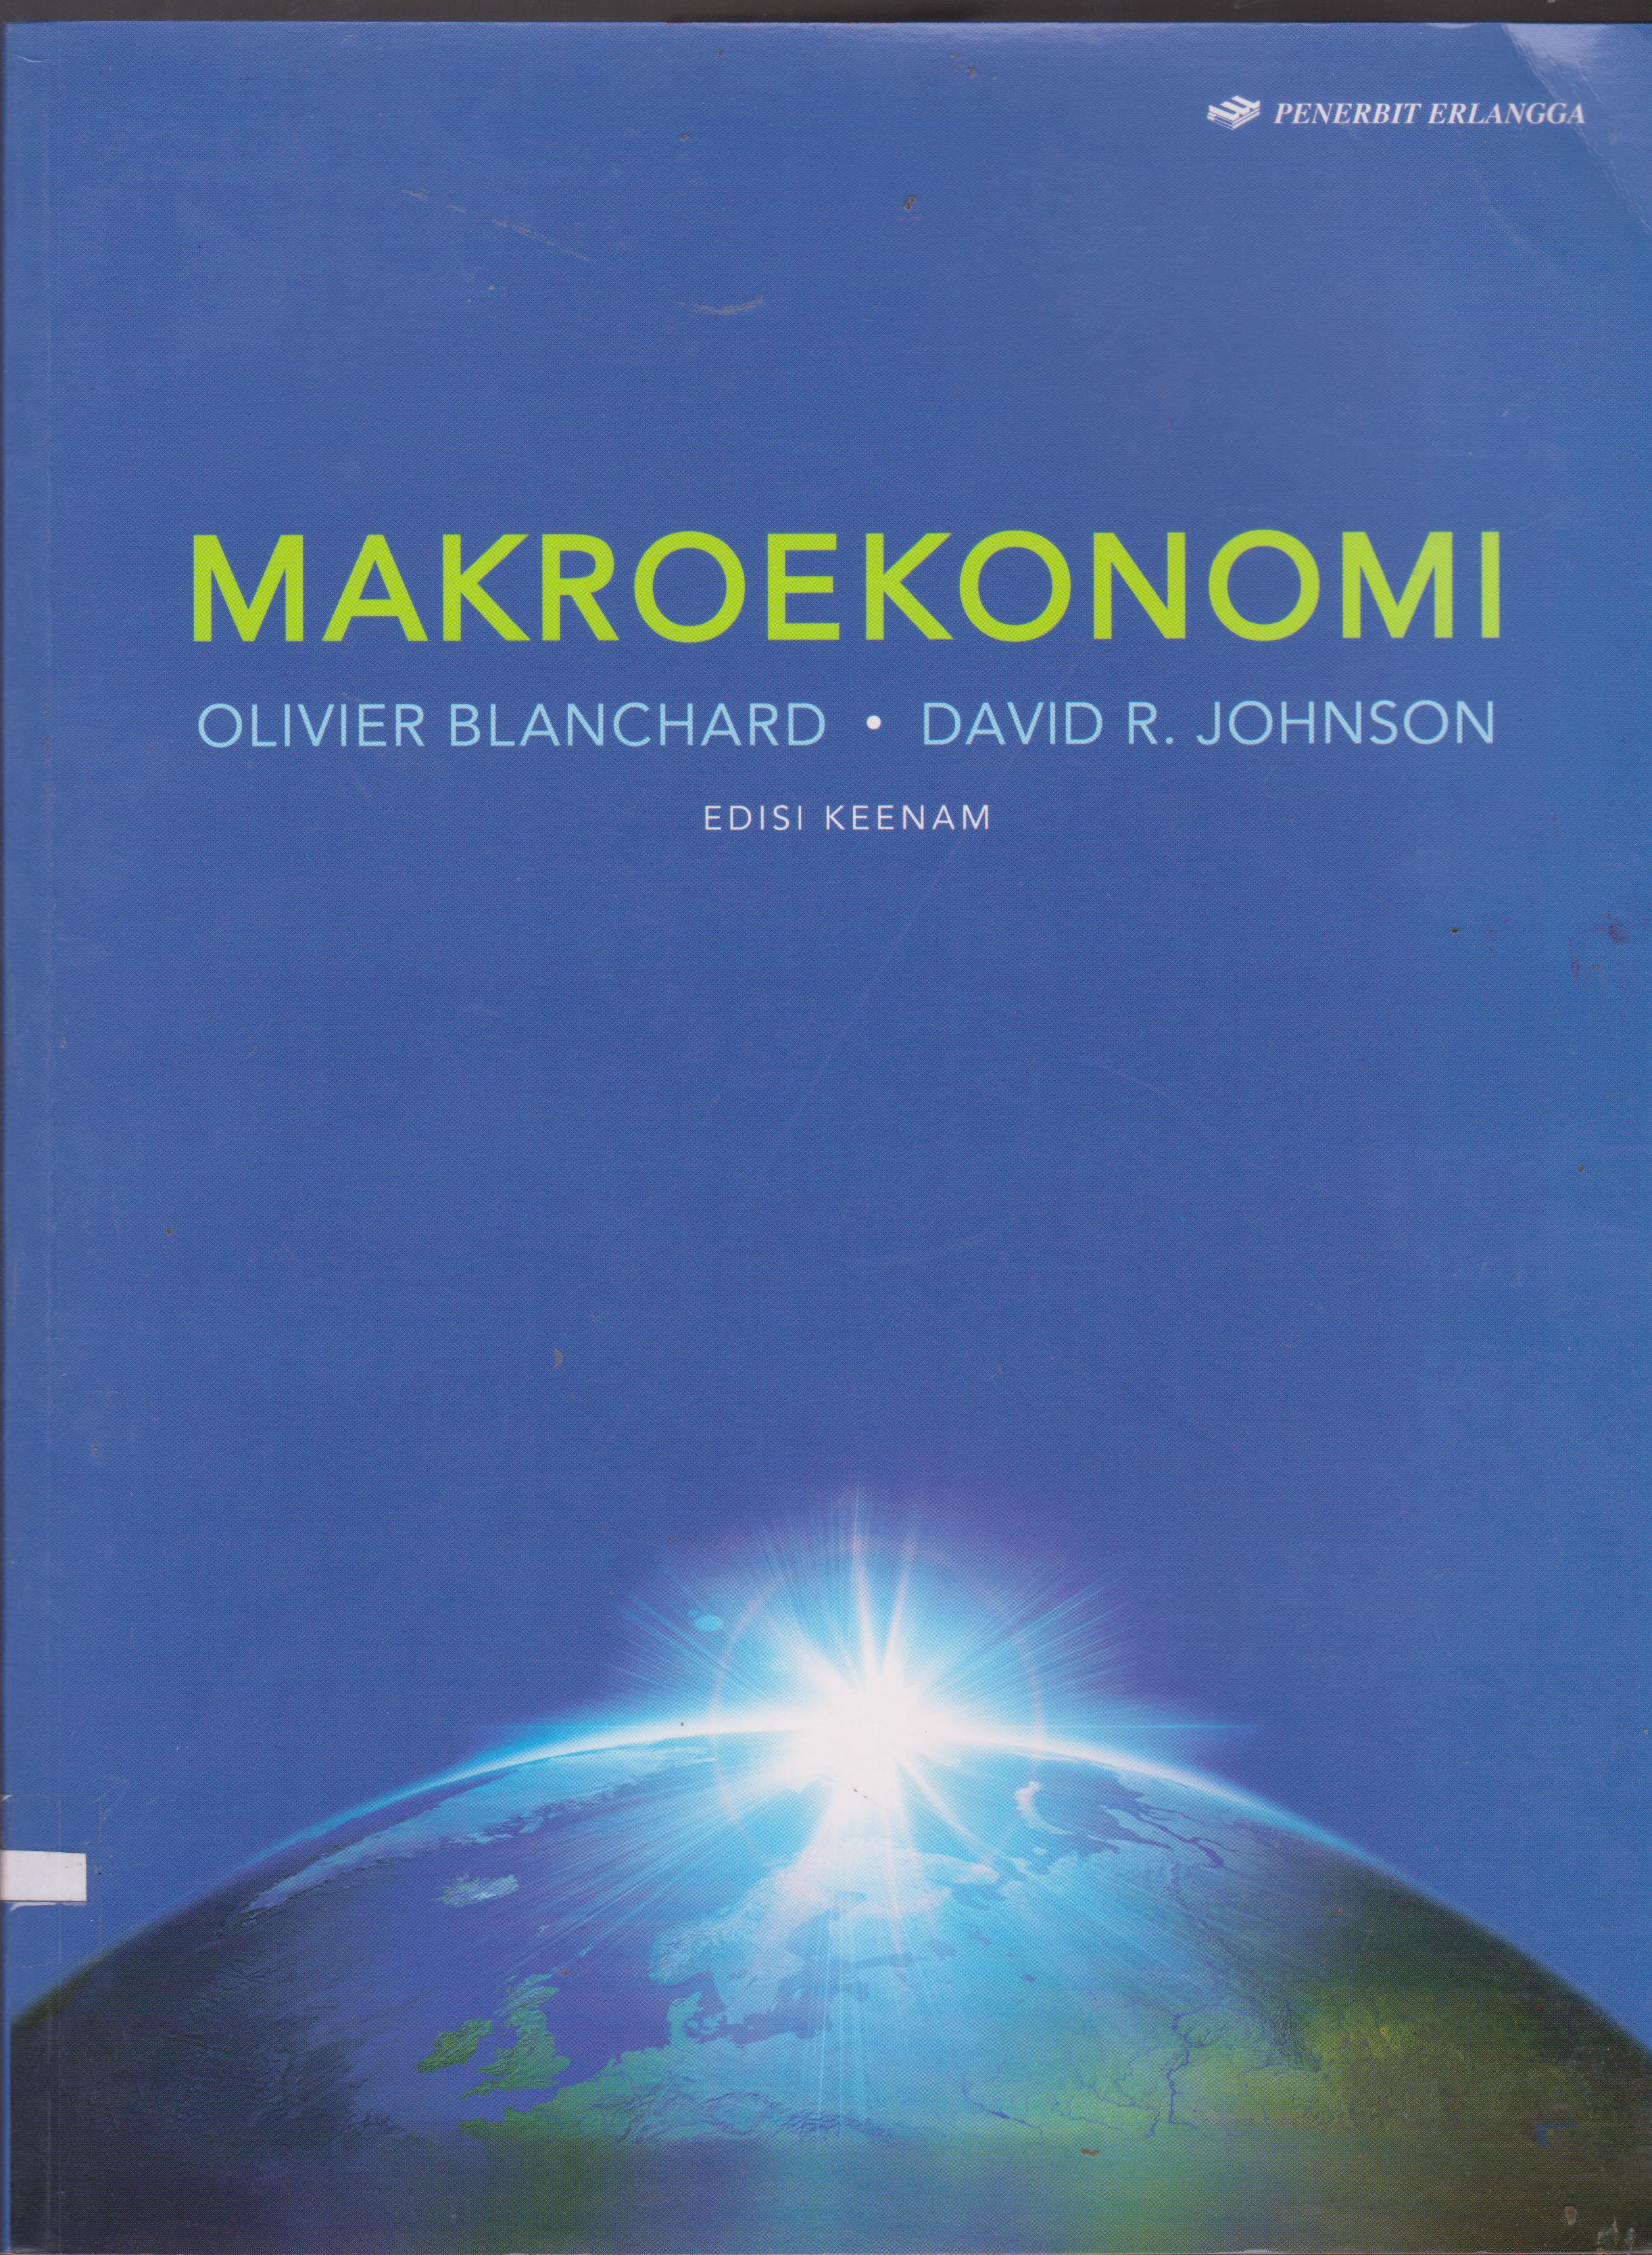 MAKRO EKONOMI : Macro economics